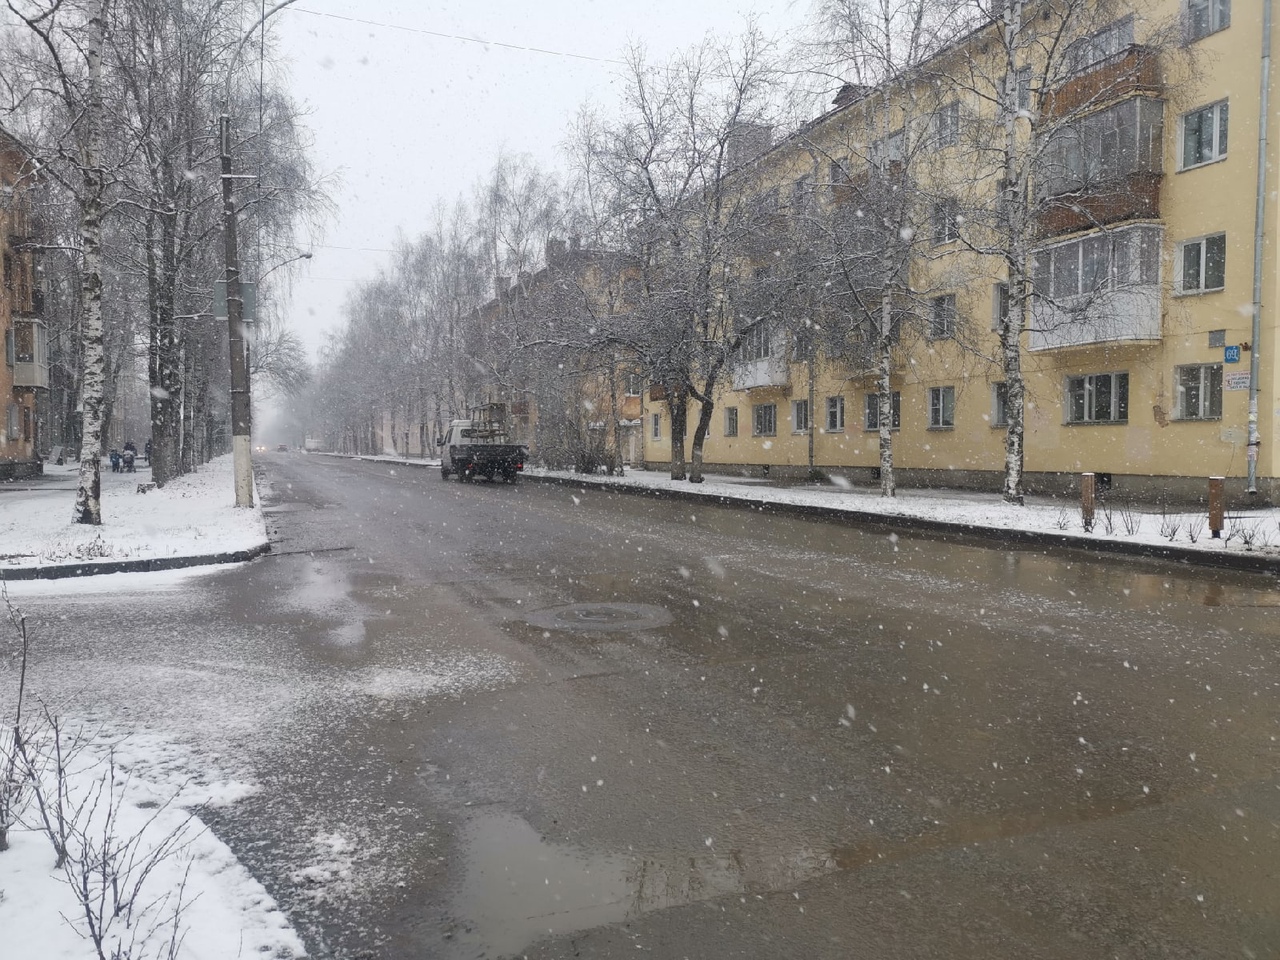 Прогноз вологда сегодня. Первый снег Вологда. Фото Вологда сегодня снегопад центр города. Снег в Вологде февраль в Вологде.